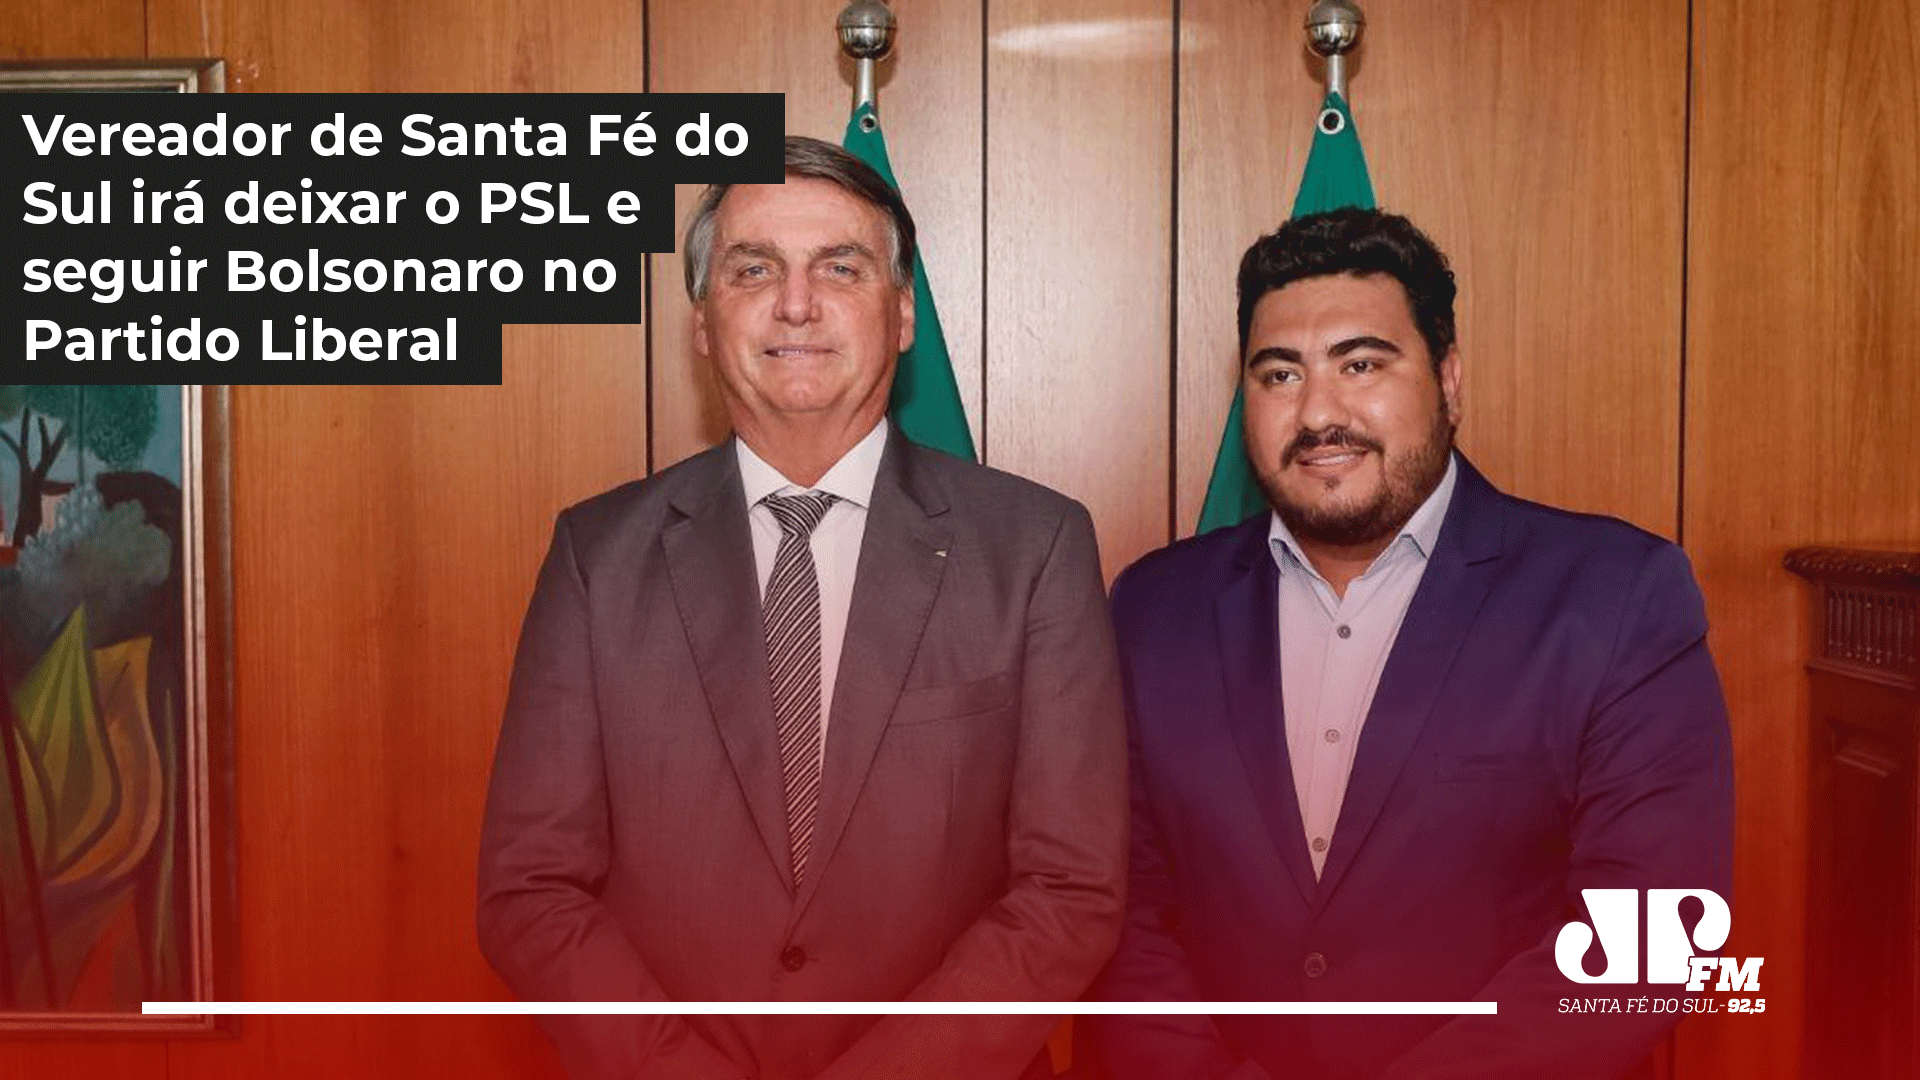 Vereador Murilo Basi afirma que irá deixar o PSL e seguir Bolsonaro no Partido Liberal